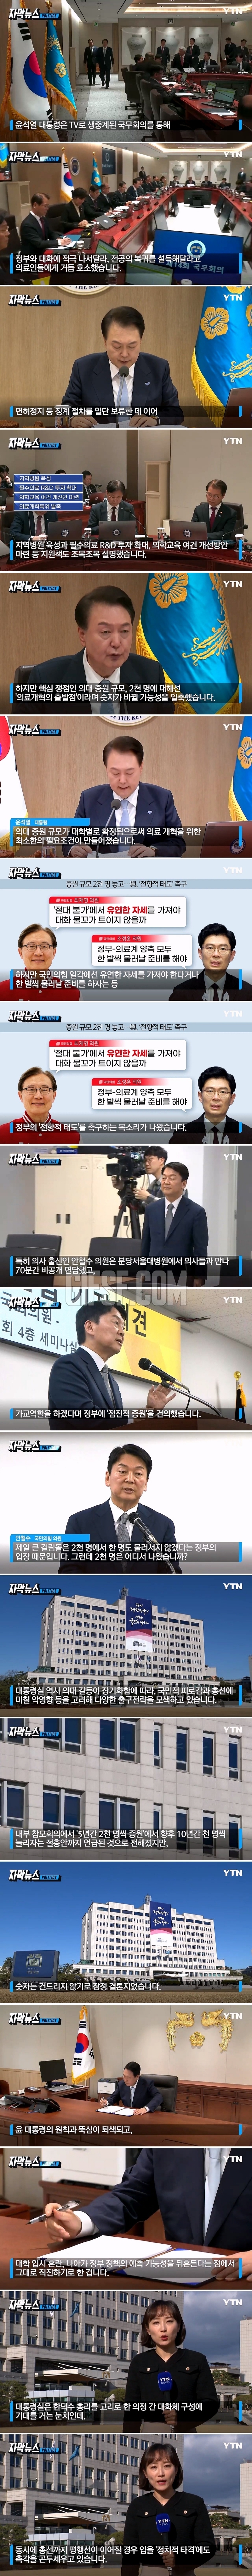 ',2천 명 증원', 쐐기 박은 尹.정치적 타격 ',촉각',.jpg